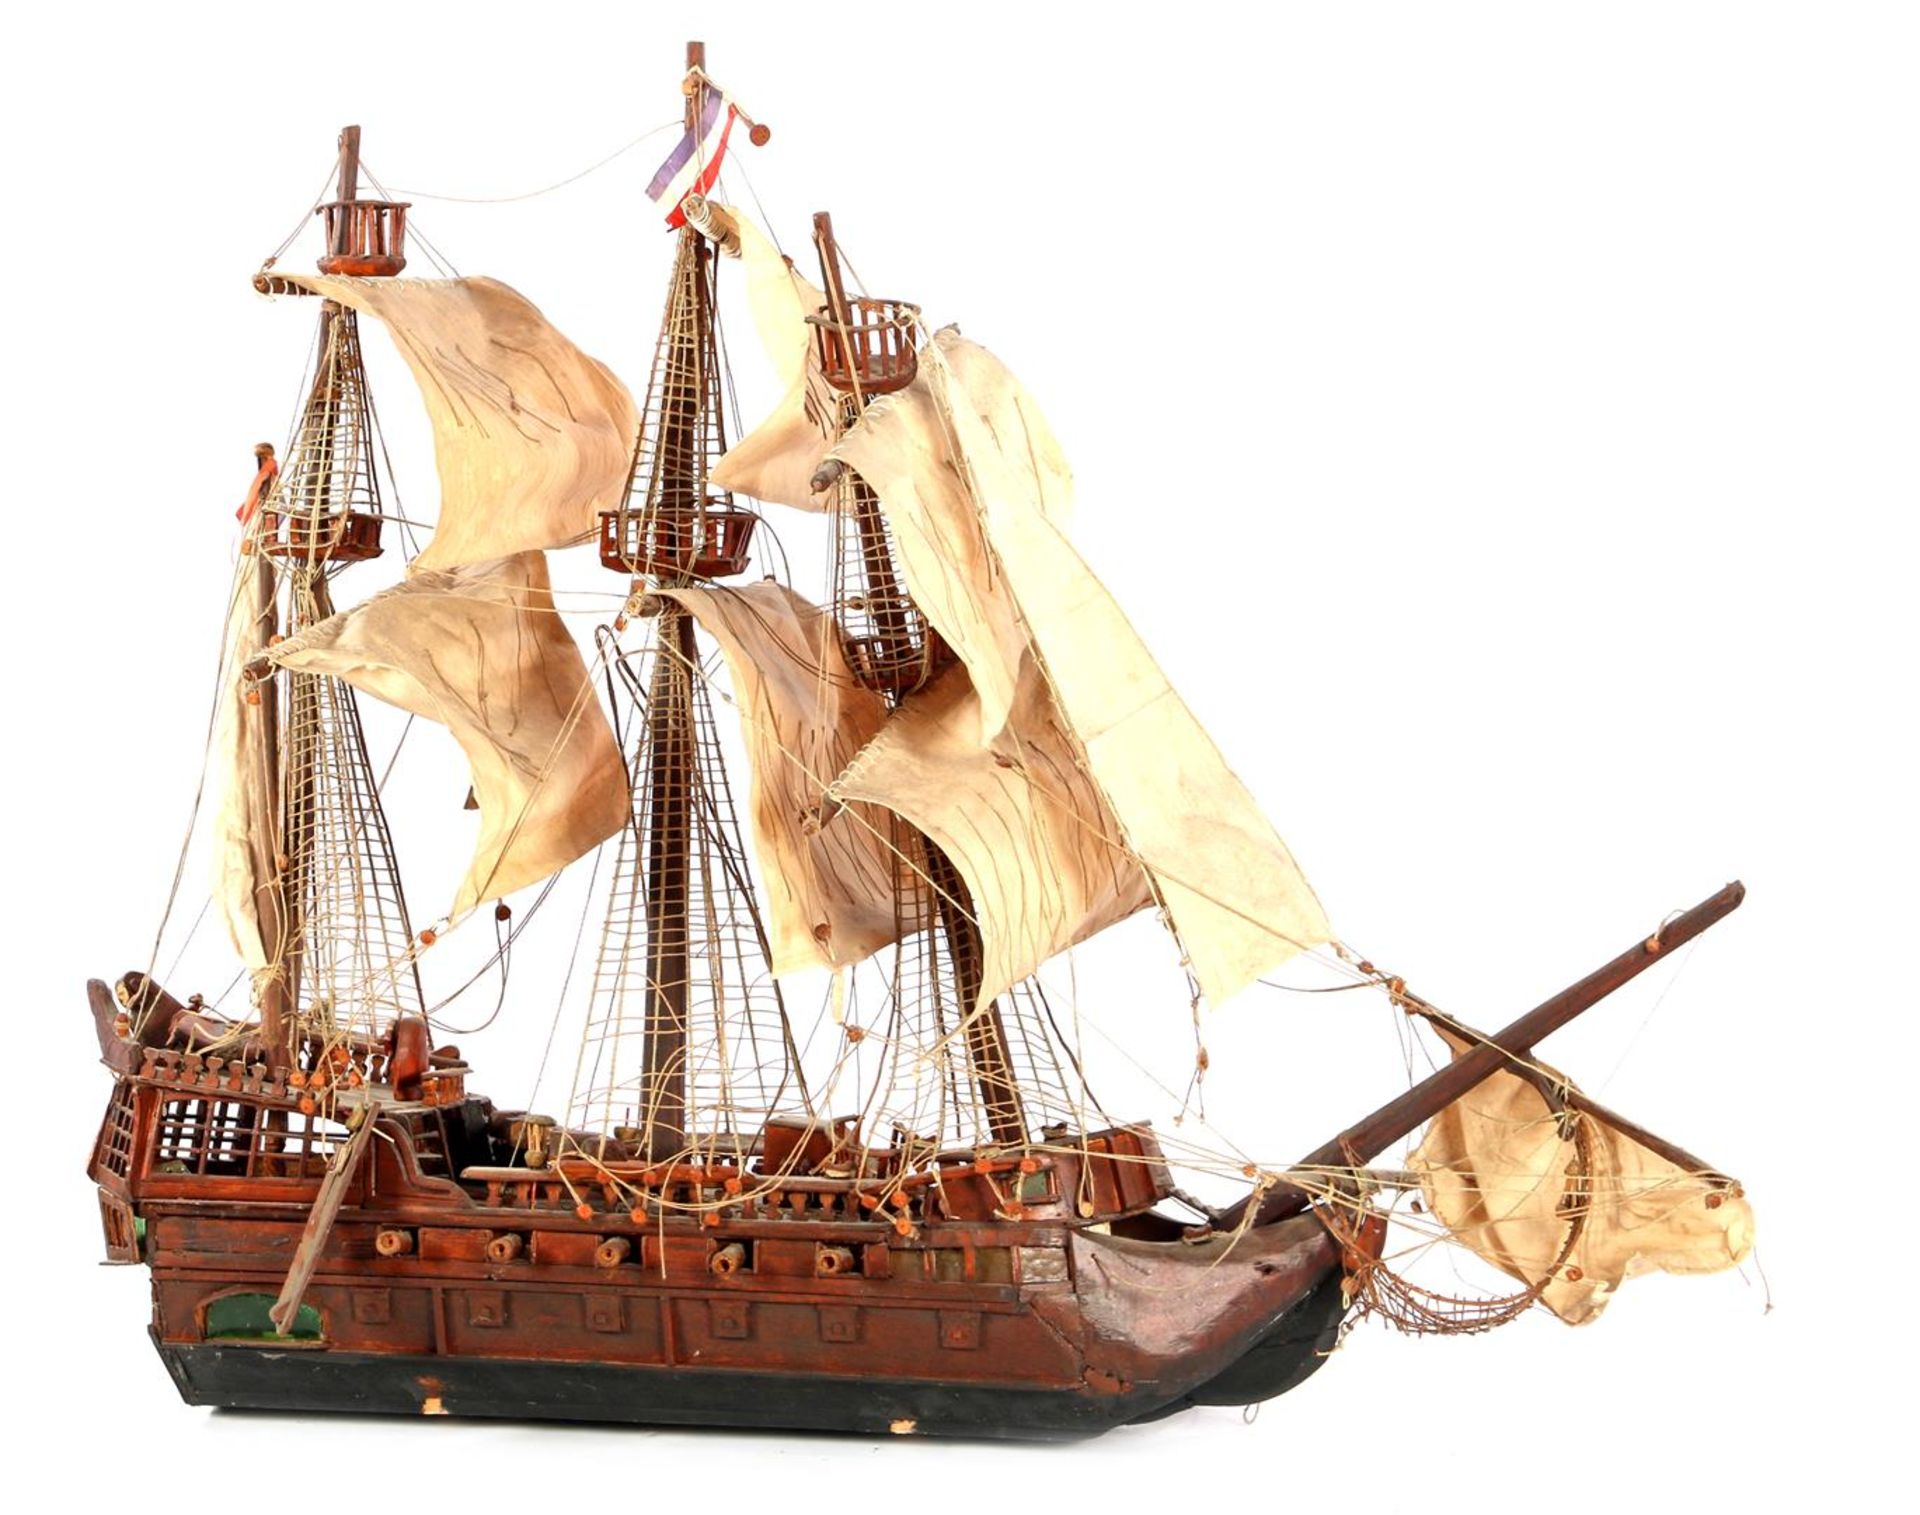 Wooden miniature warship